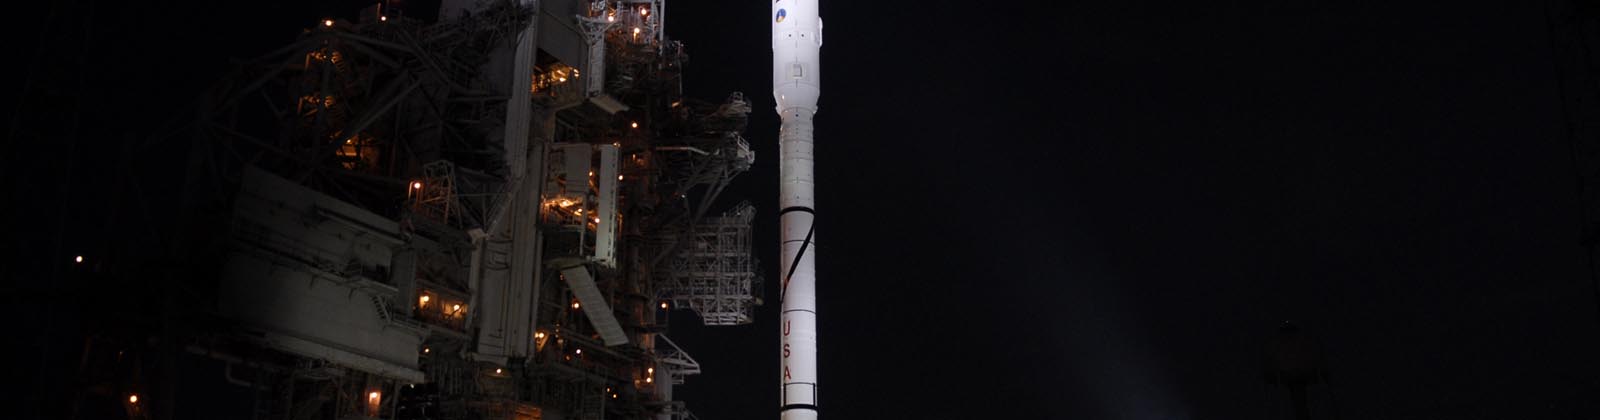 La fusée Ares I-X au Kennedy Space Center